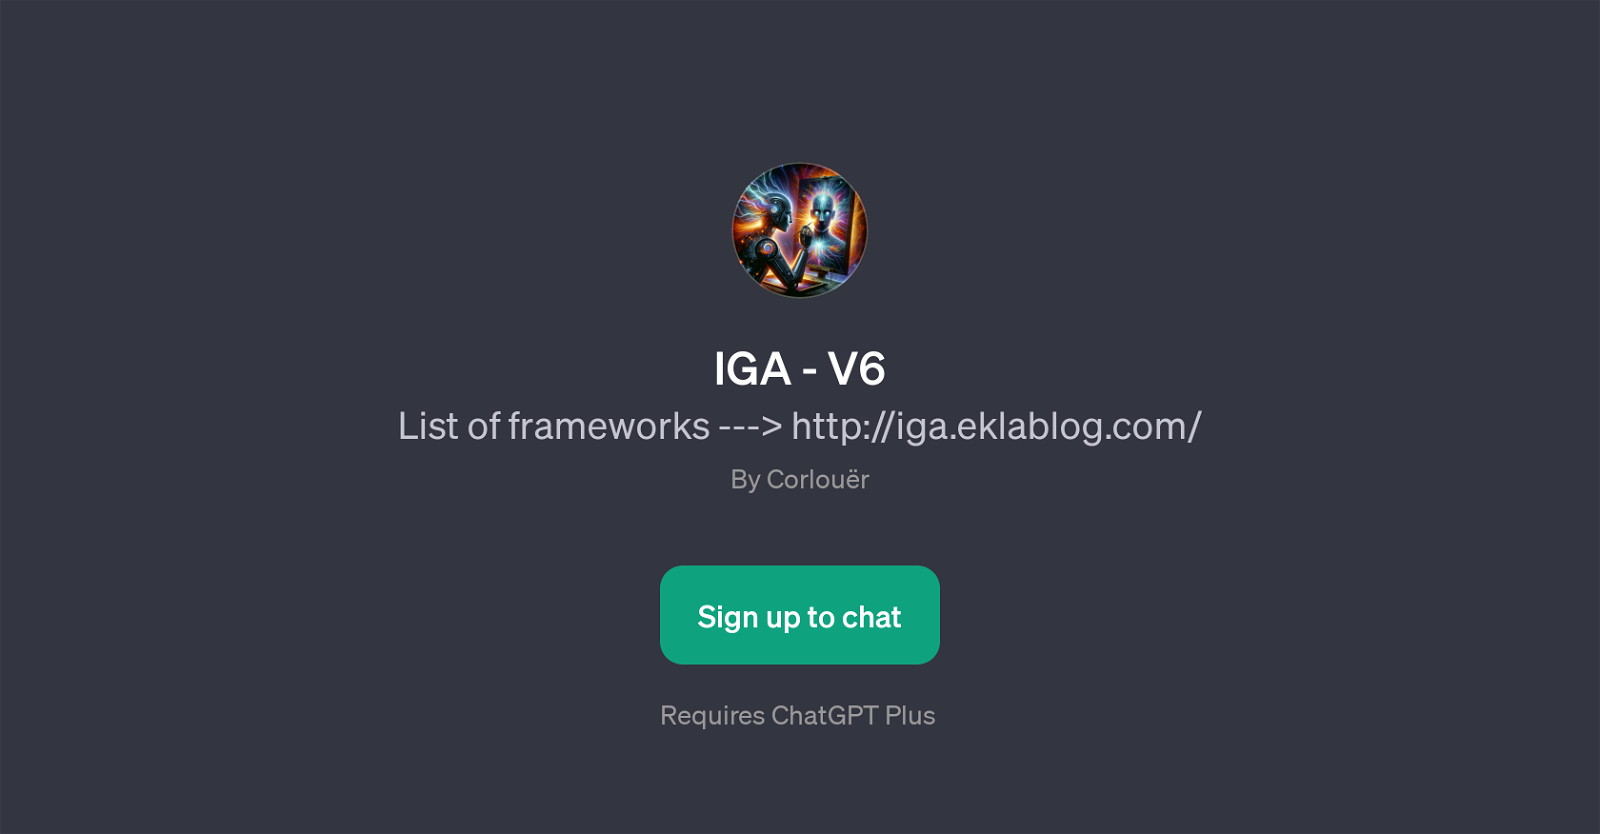 IGA - V6 website